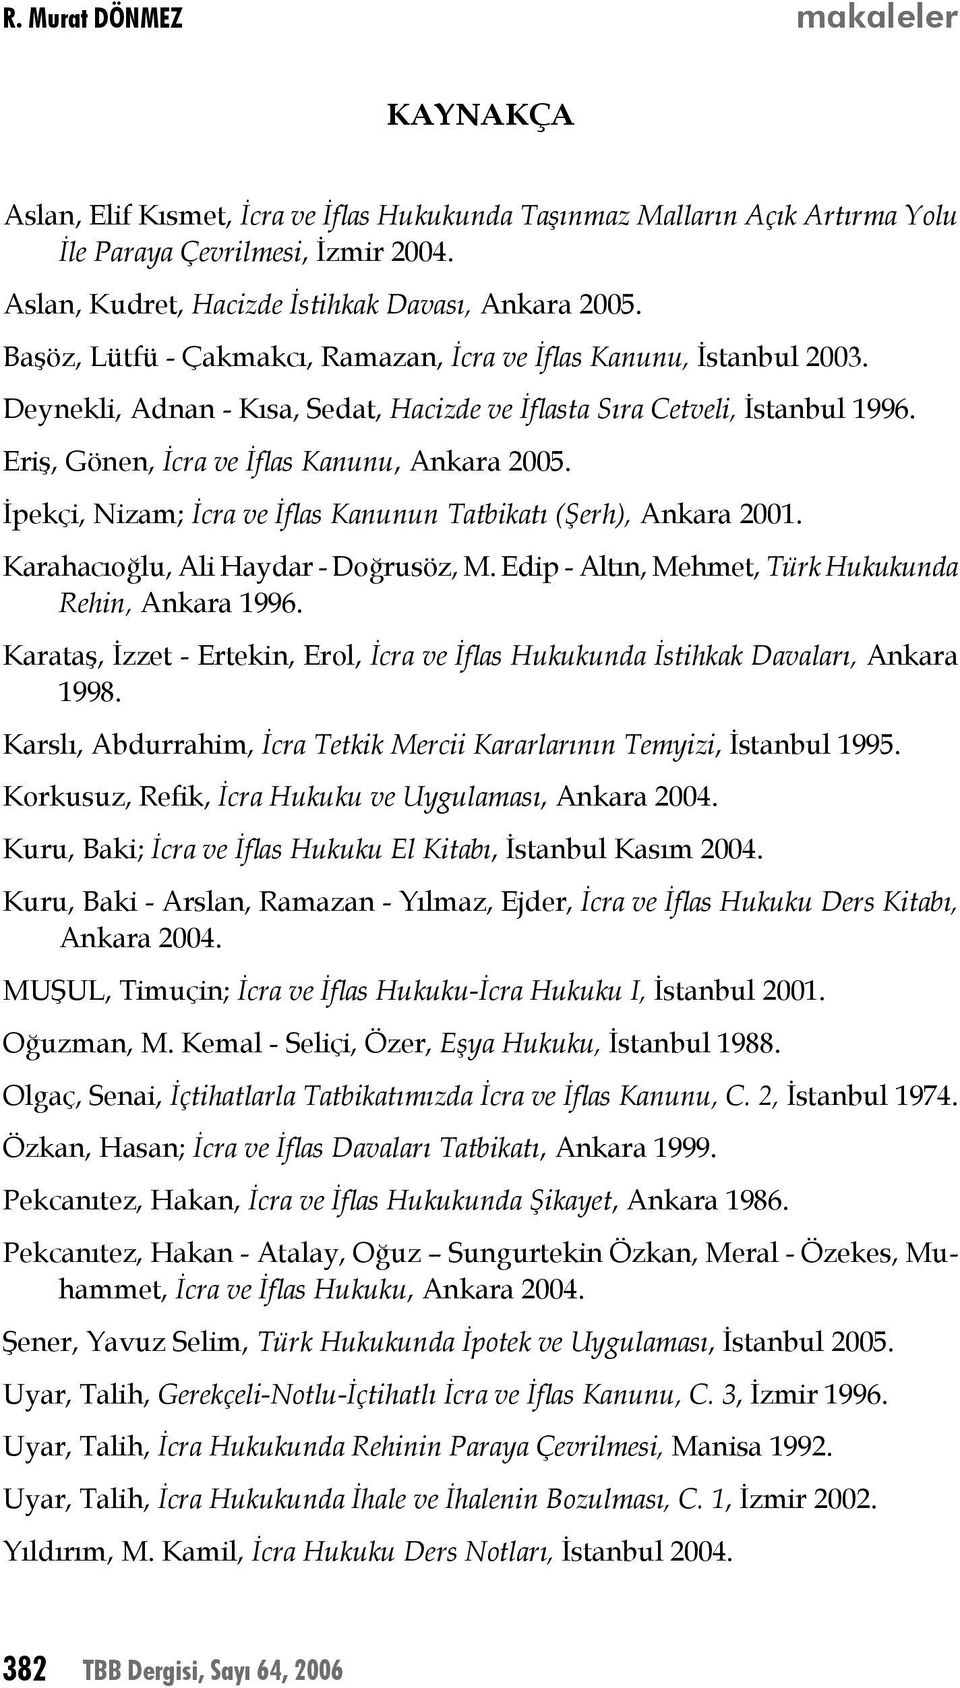 İpekçi, Nizam; İcra ve İflas Kanunun Tatbikatı (Şerh), Ankara 2001. Karahacıoğlu, Ali Haydar - Doğrusöz, M. Edip - Altın, Mehmet, Türk Hukukunda Rehin, Ankara 1996.